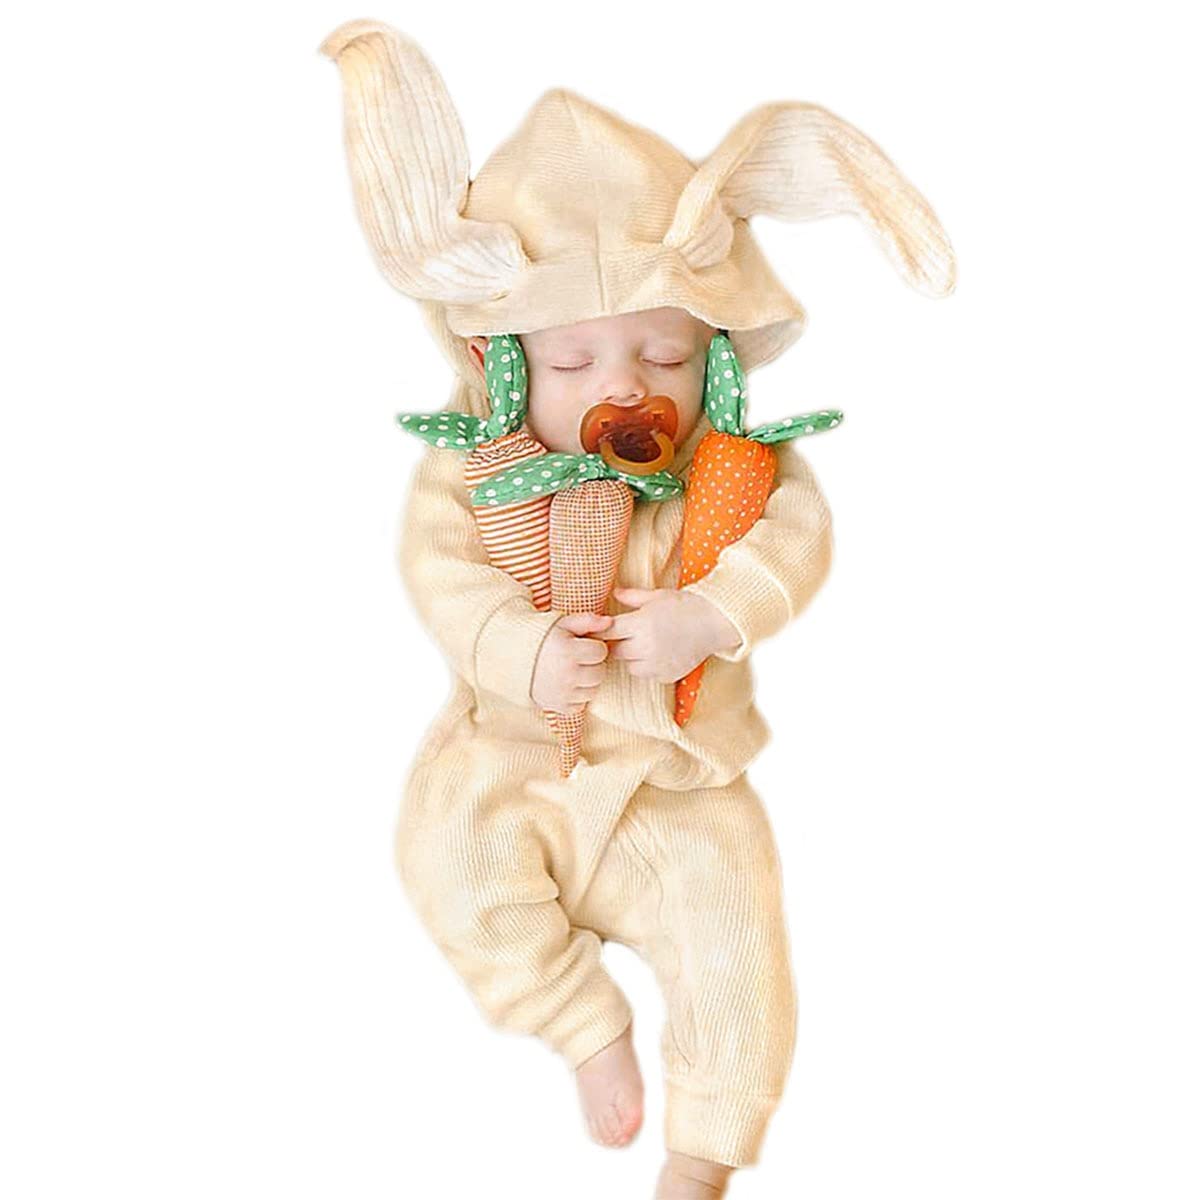 Simplee kids Animal Bunny Baby Easter Romper Long Ear Rabbit Hoodie Romper Jumpsuit with Zipper